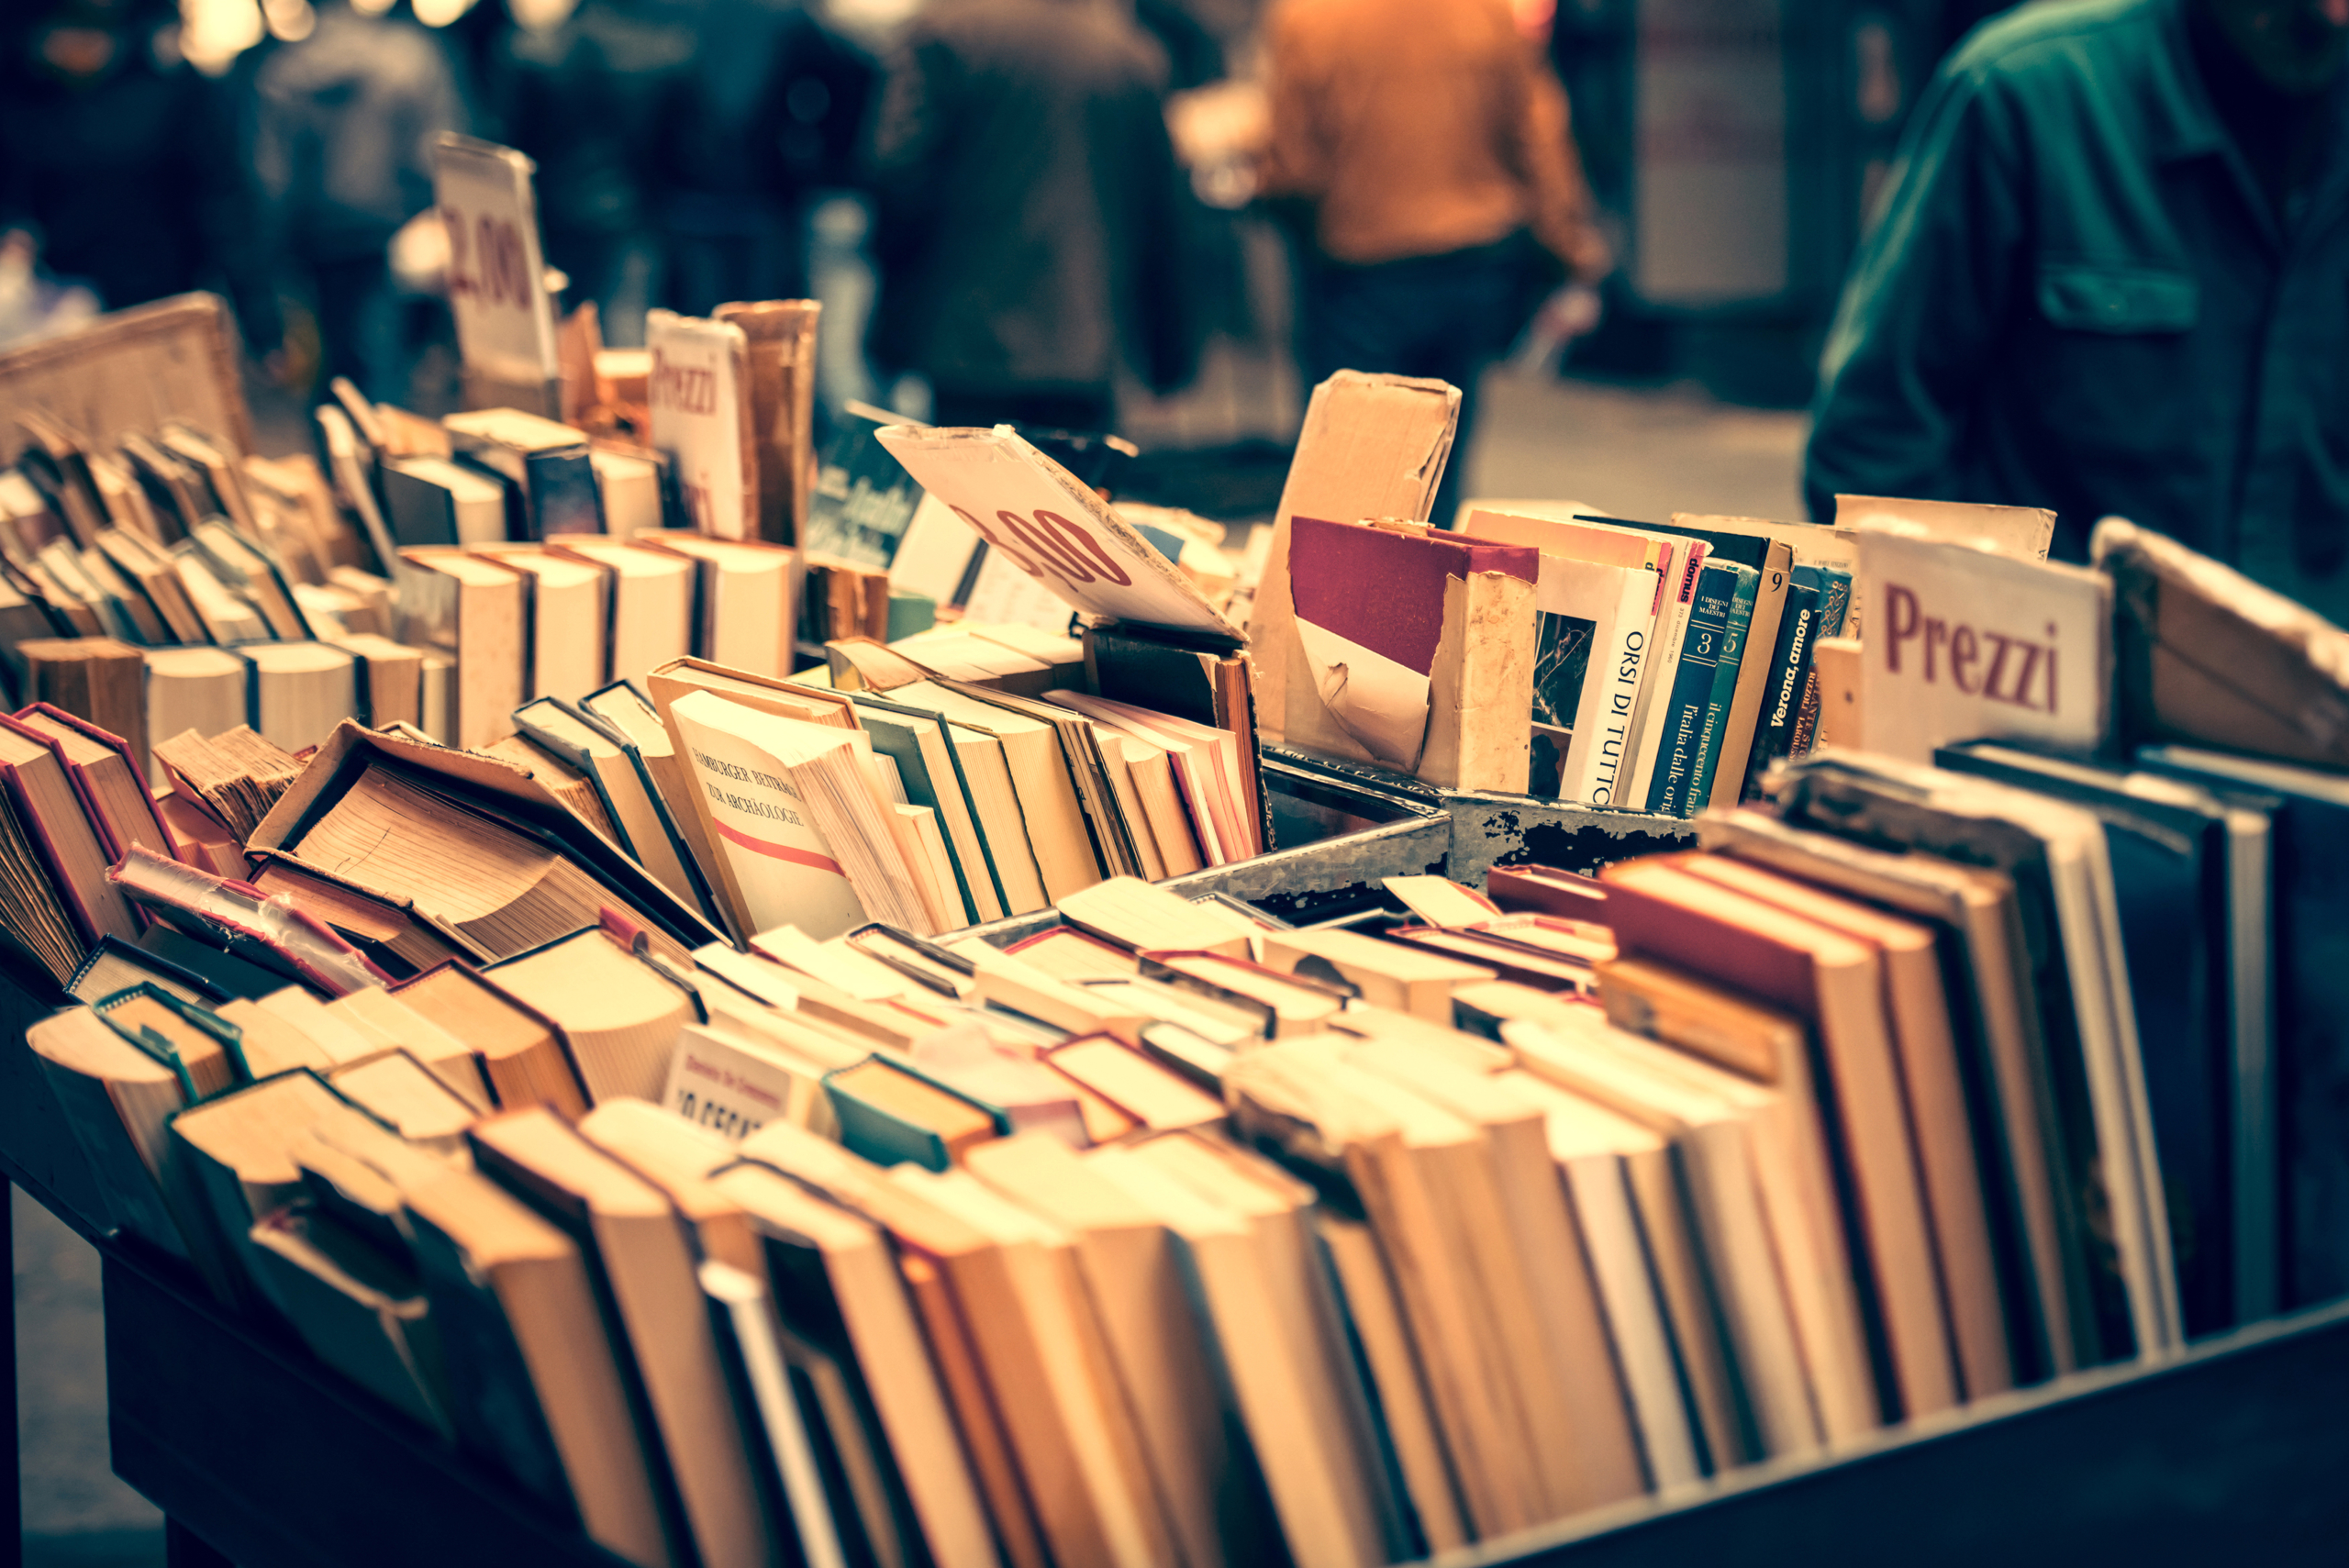 Sách cũ là một trong những mặt hàng đồ cũ được ưa chuộng nhất, cũng là món đồ sưu tầm yêu thích của một số nhà văn, nghệ sĩ. (Ảnh: Shutterstock)